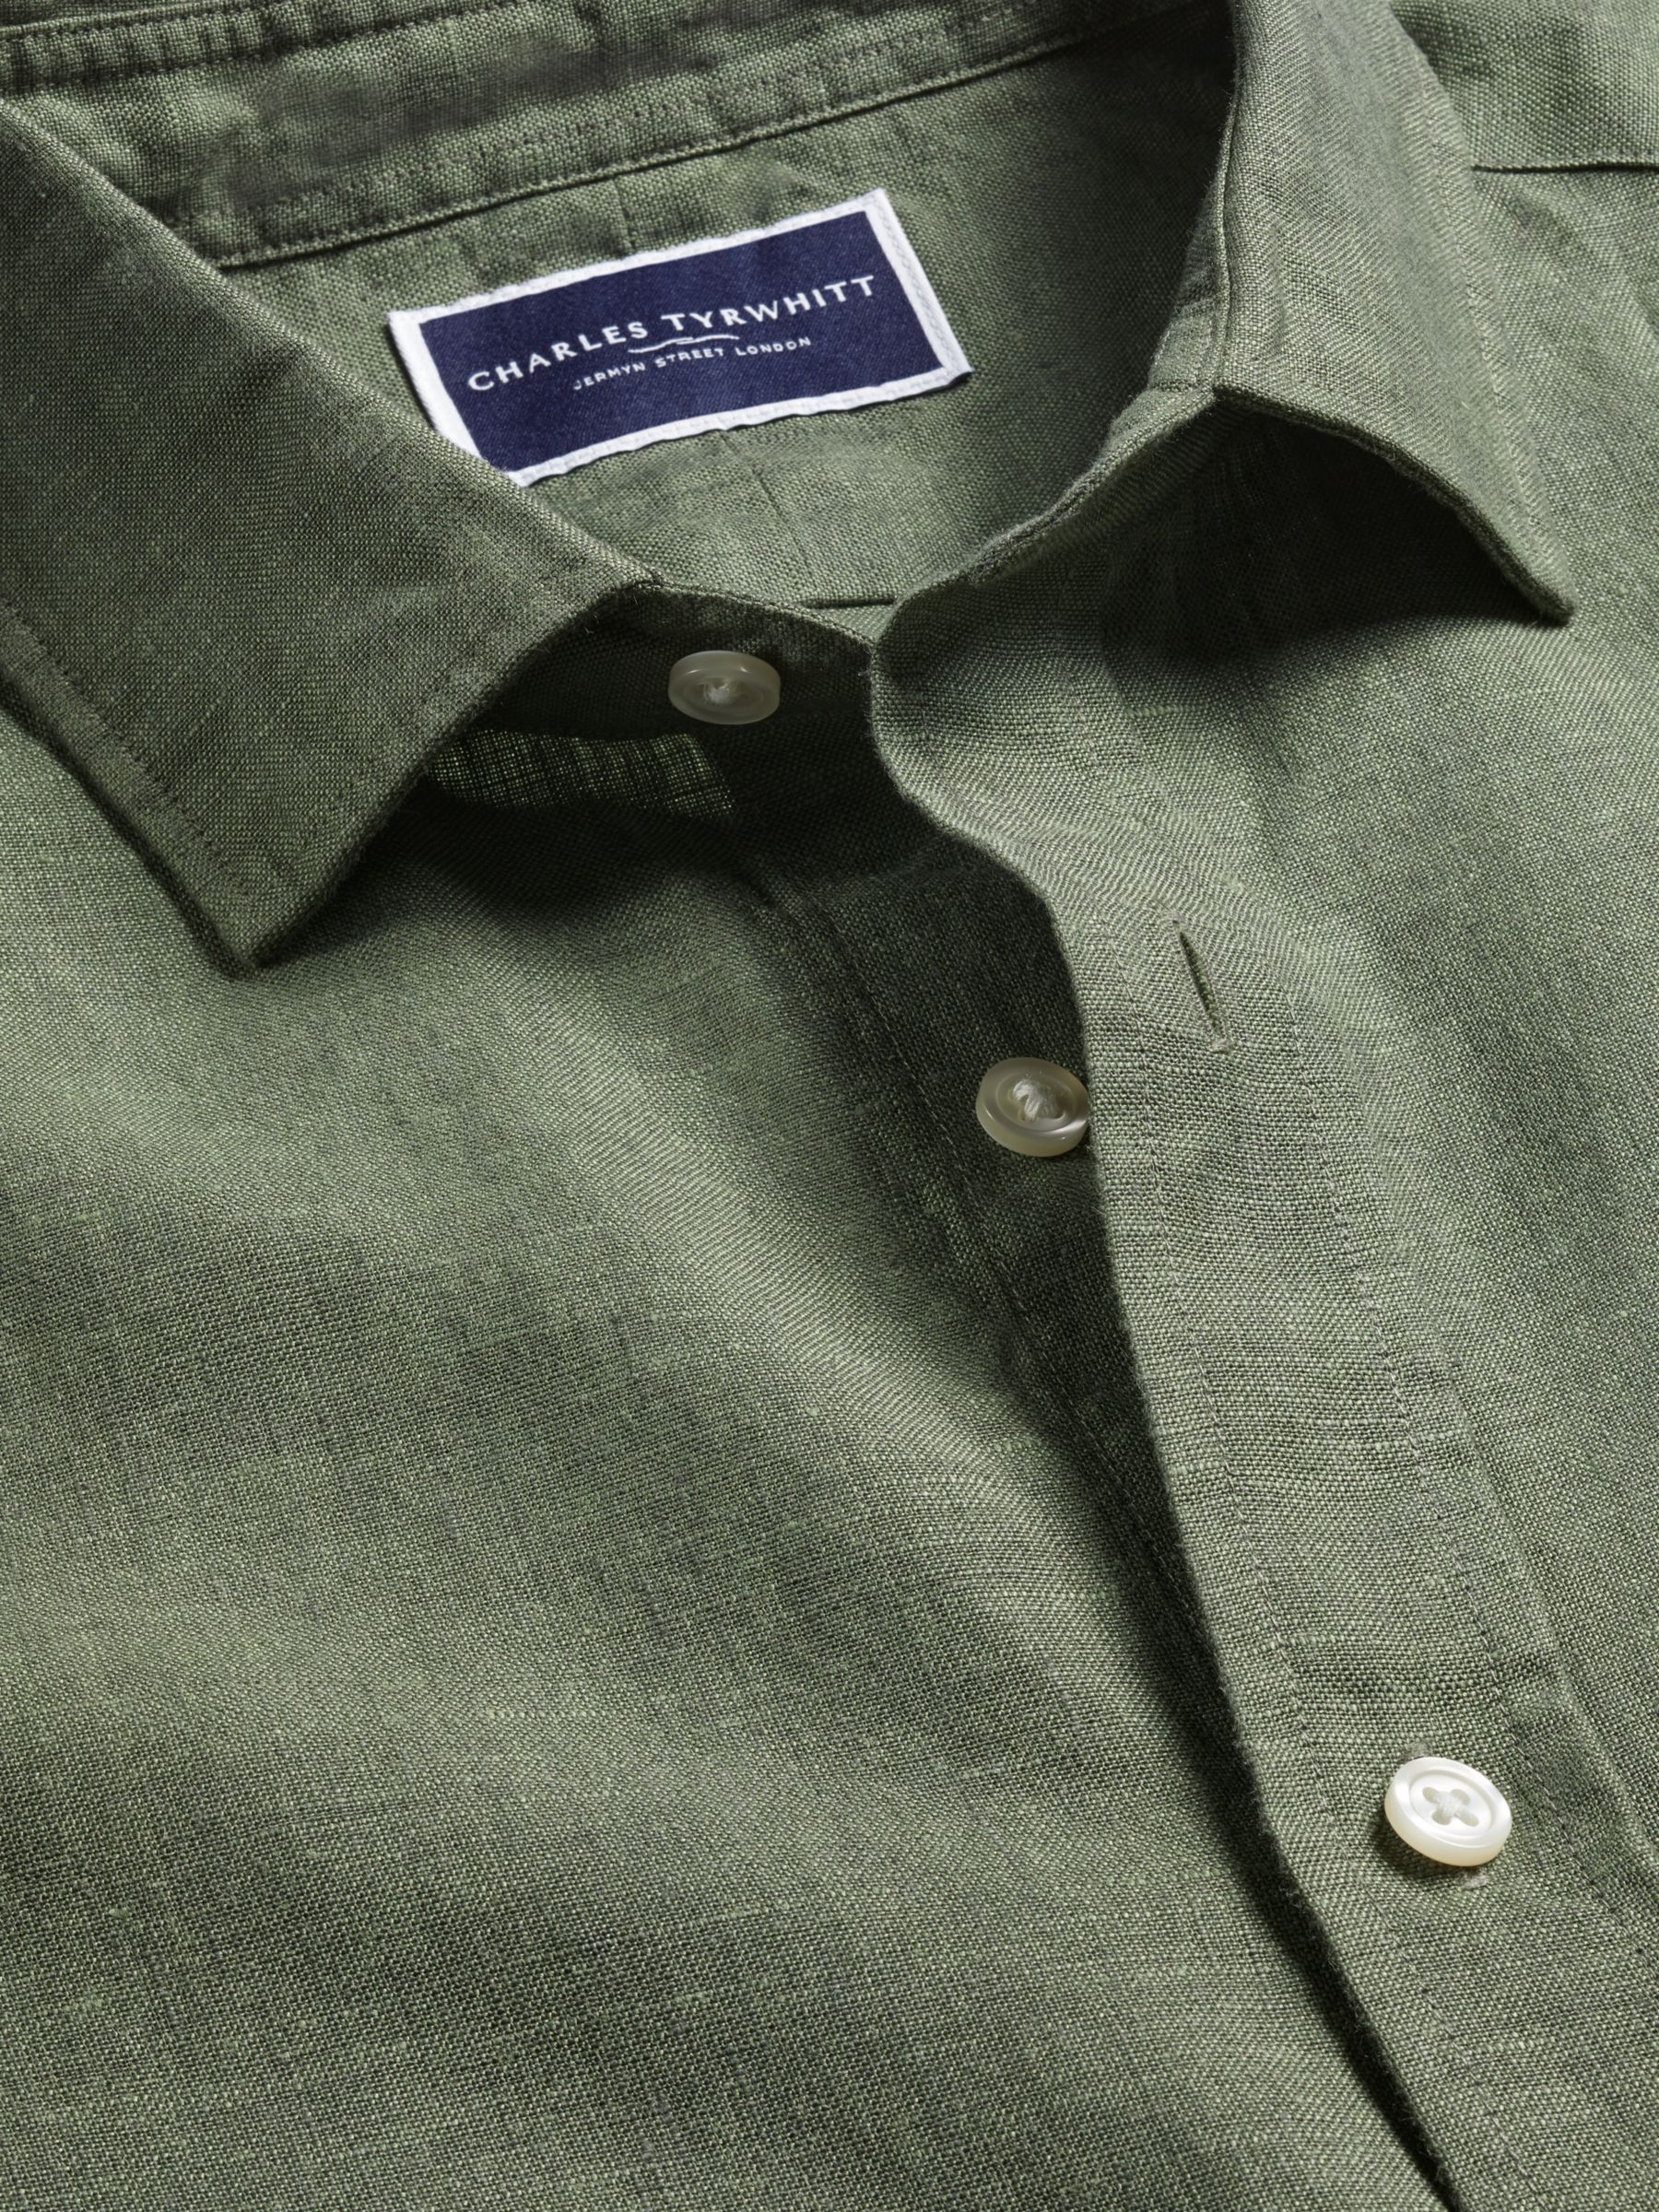 Buy Charles Tyrwhitt Linen Slim Fit Short Sleeve Shirt Online at johnlewis.com